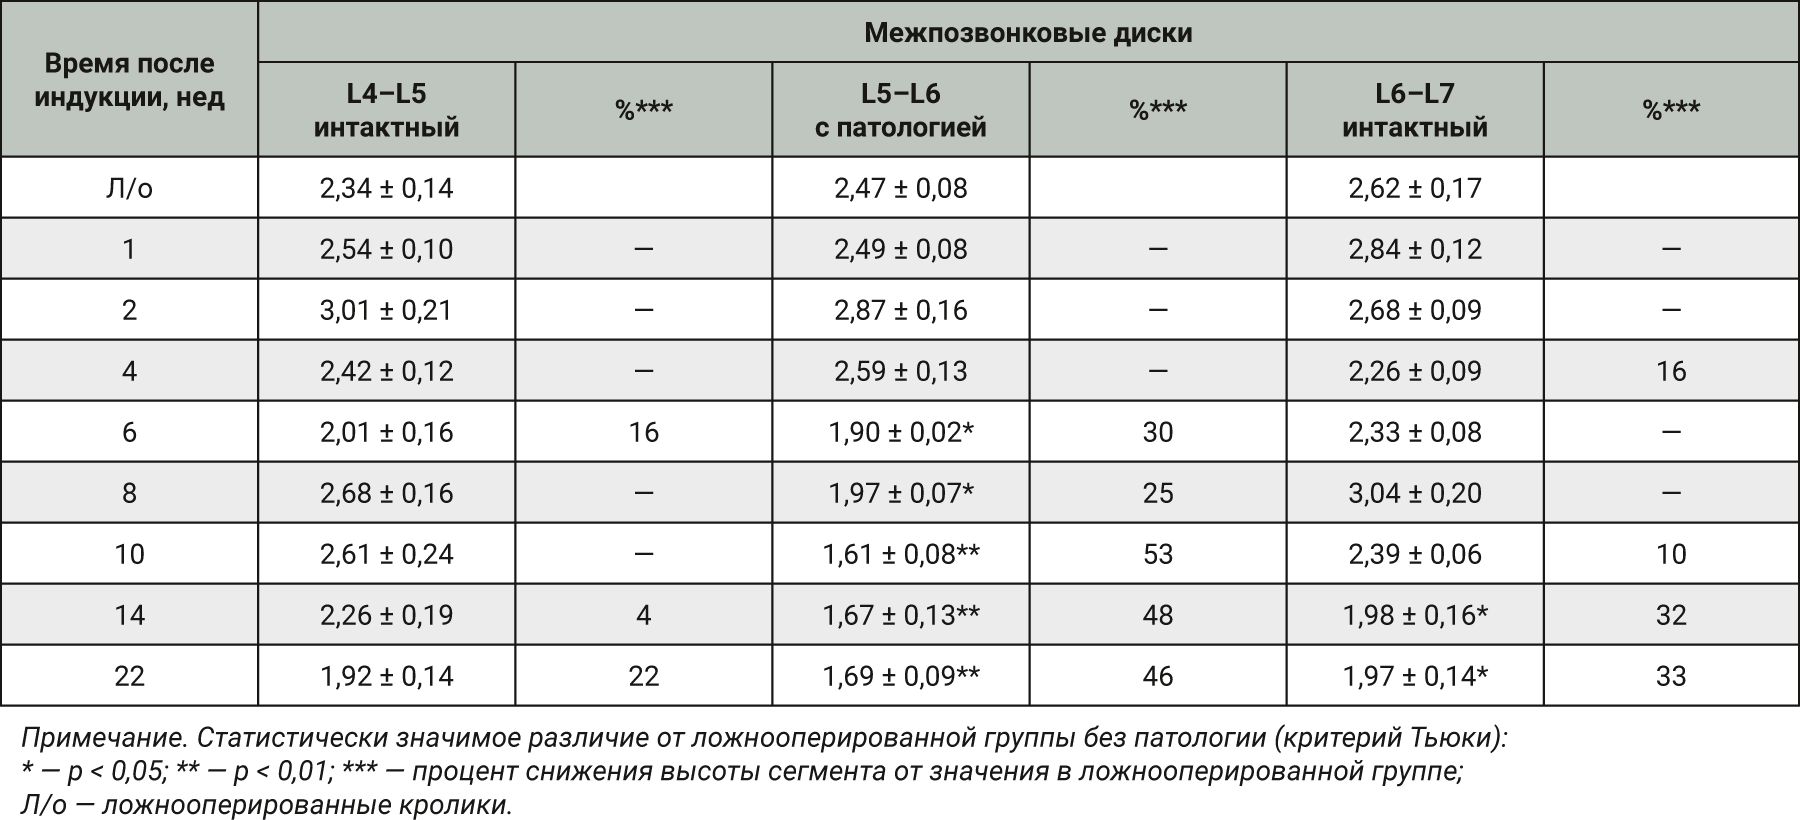  <strong>Таблица 1.</strong> Среднее значение высоты (мм) межпозвонковых дисков у кроликов на различных временных отрезках<em> (М±S.E.M.), n=3</em> 